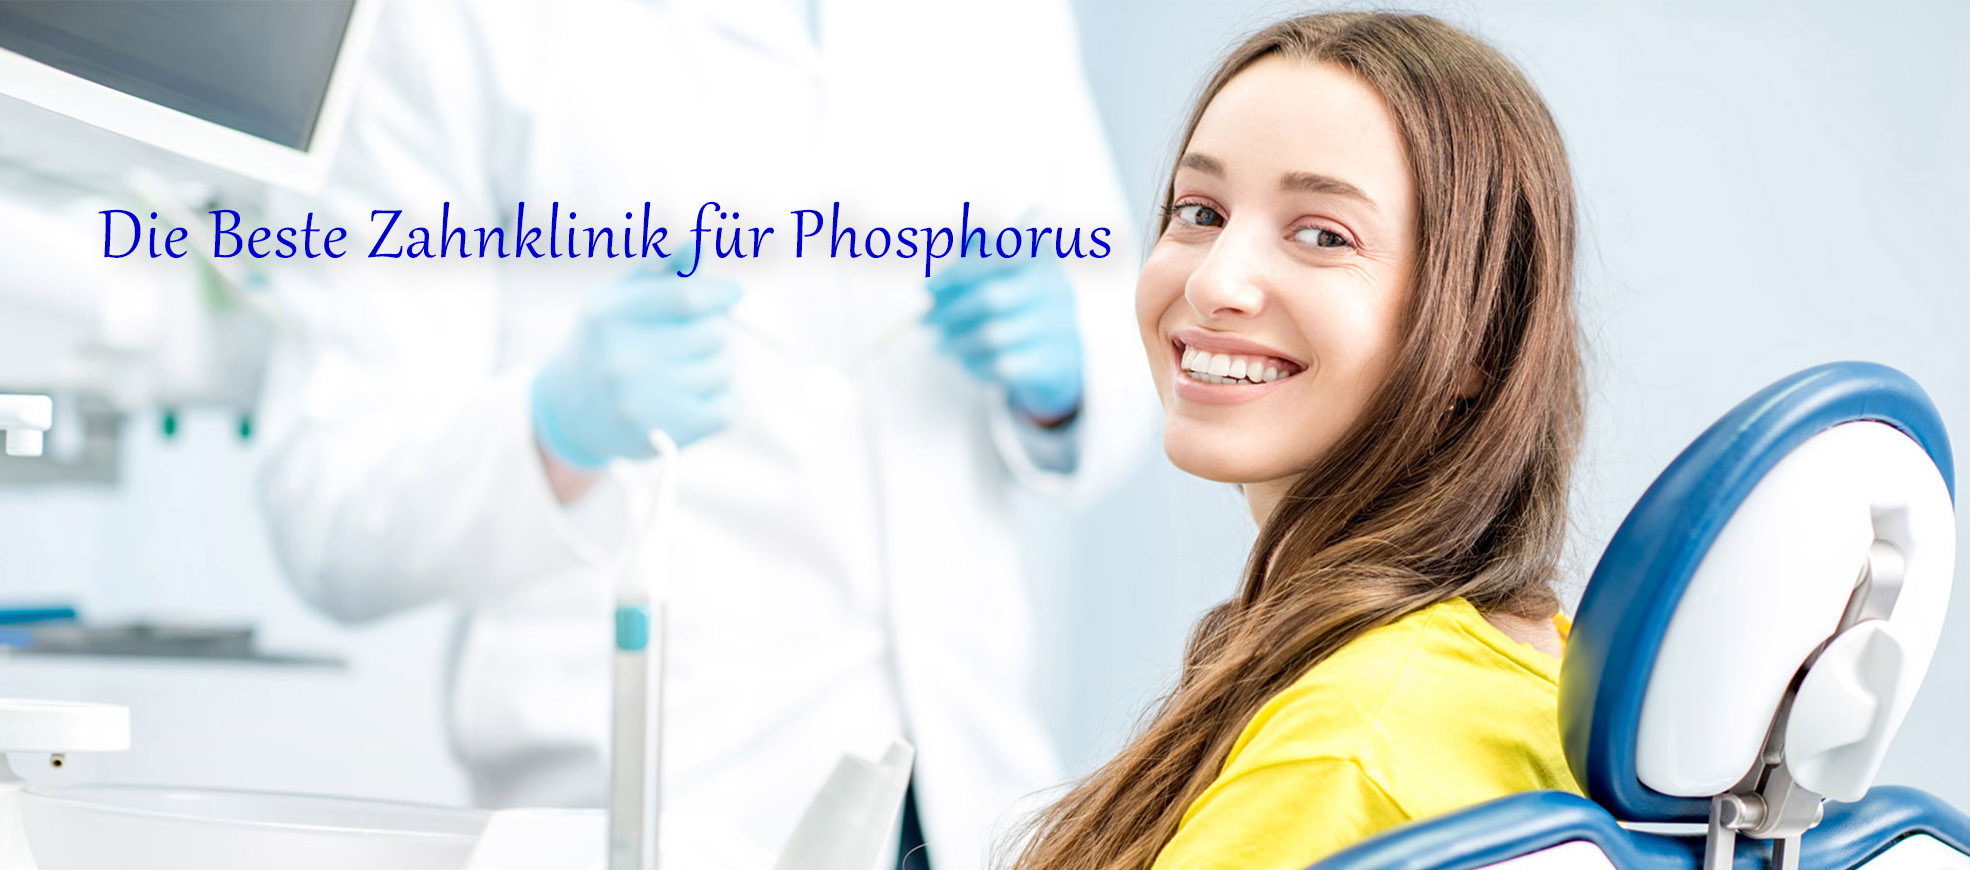 Die beste Zahnklinik für Phosphorus